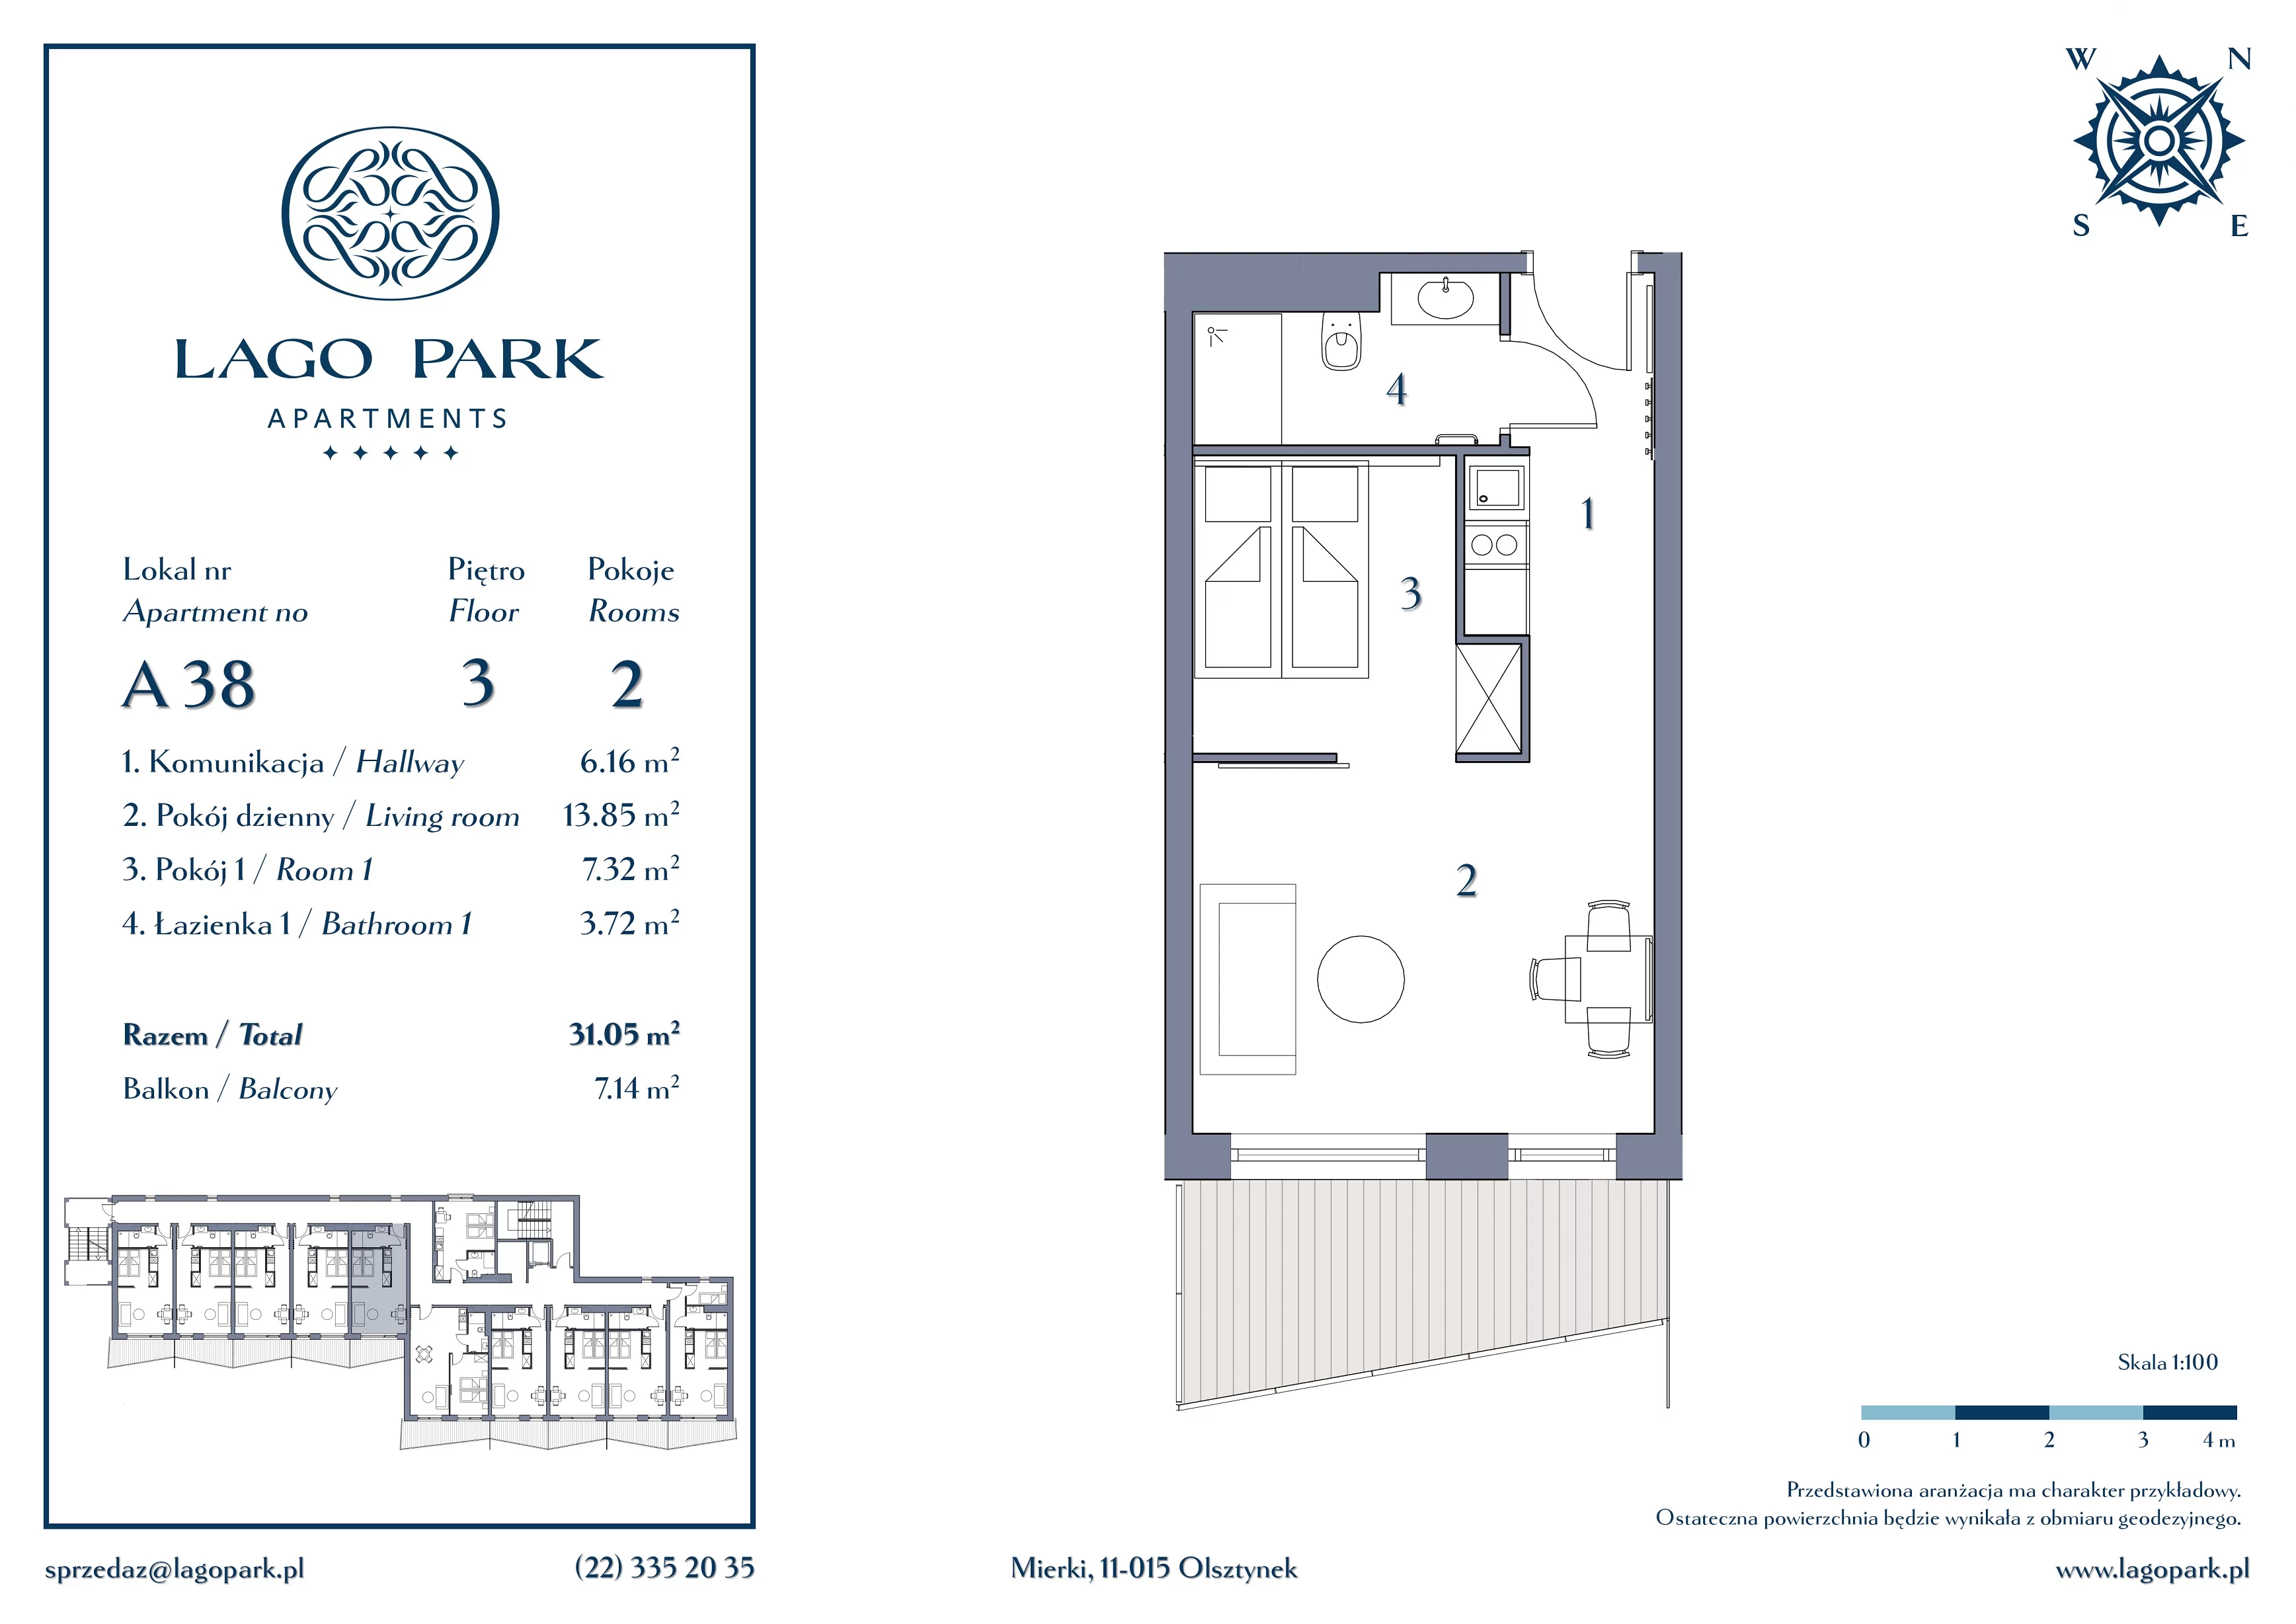 Apartament inwestycyjny 31,05 m², piętro 3, oferta nr A38, Lago Park Apartments by Aries, Mierki, Kołatek 2